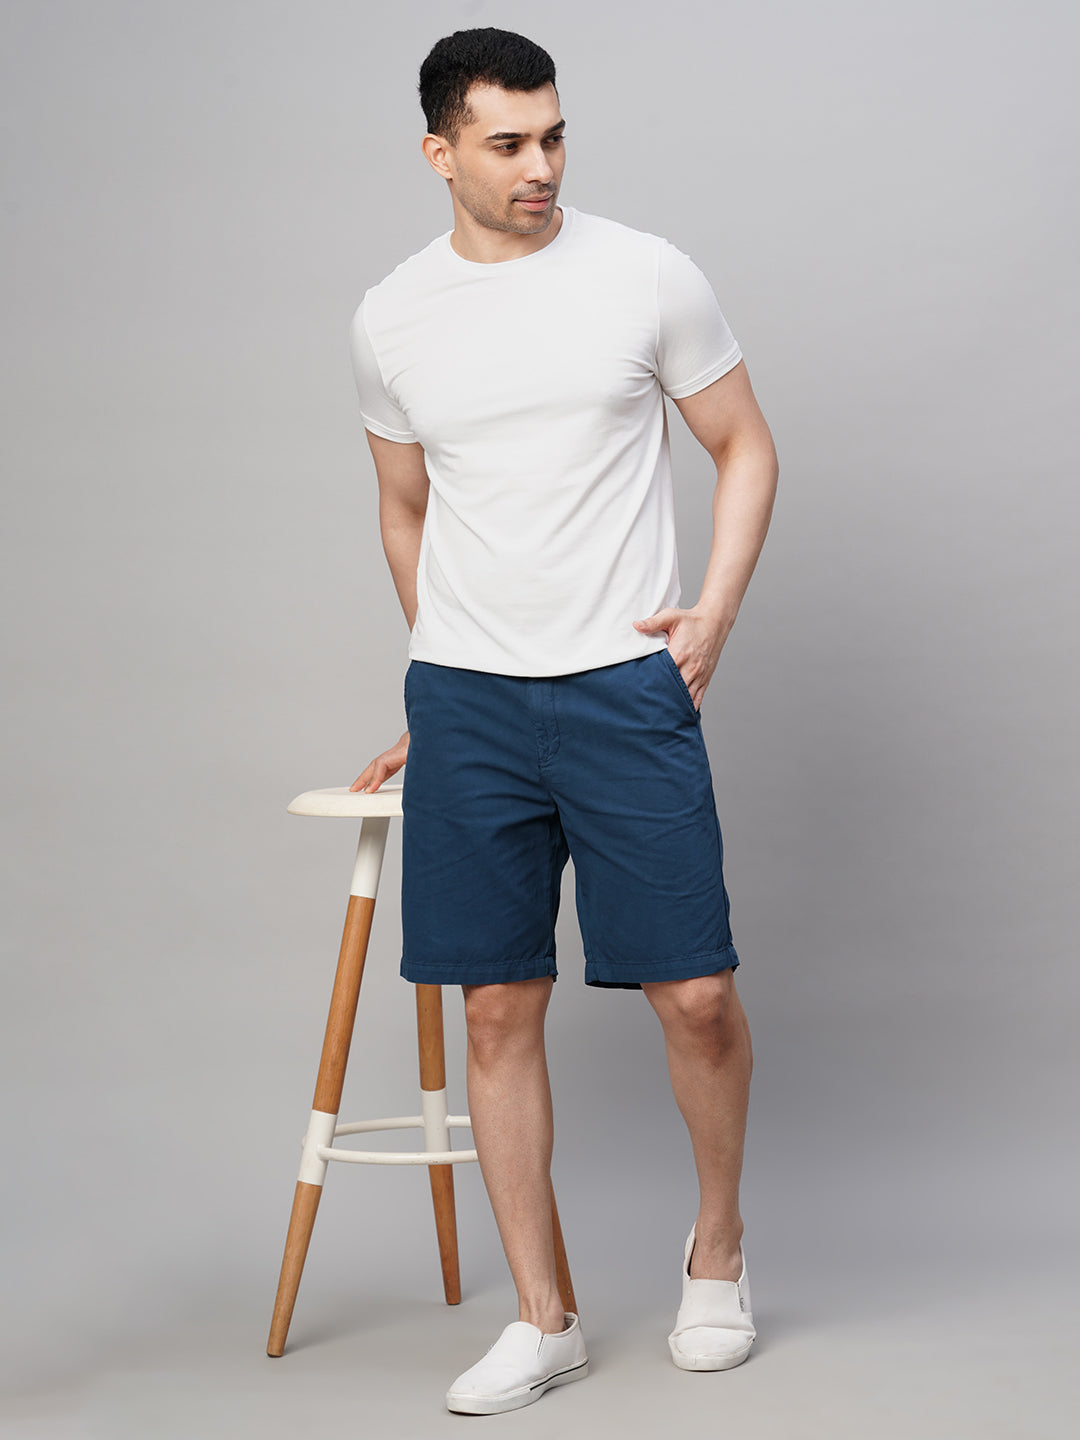 Men's White Cotton Bamboo Elastane Regular Fit Tshirt